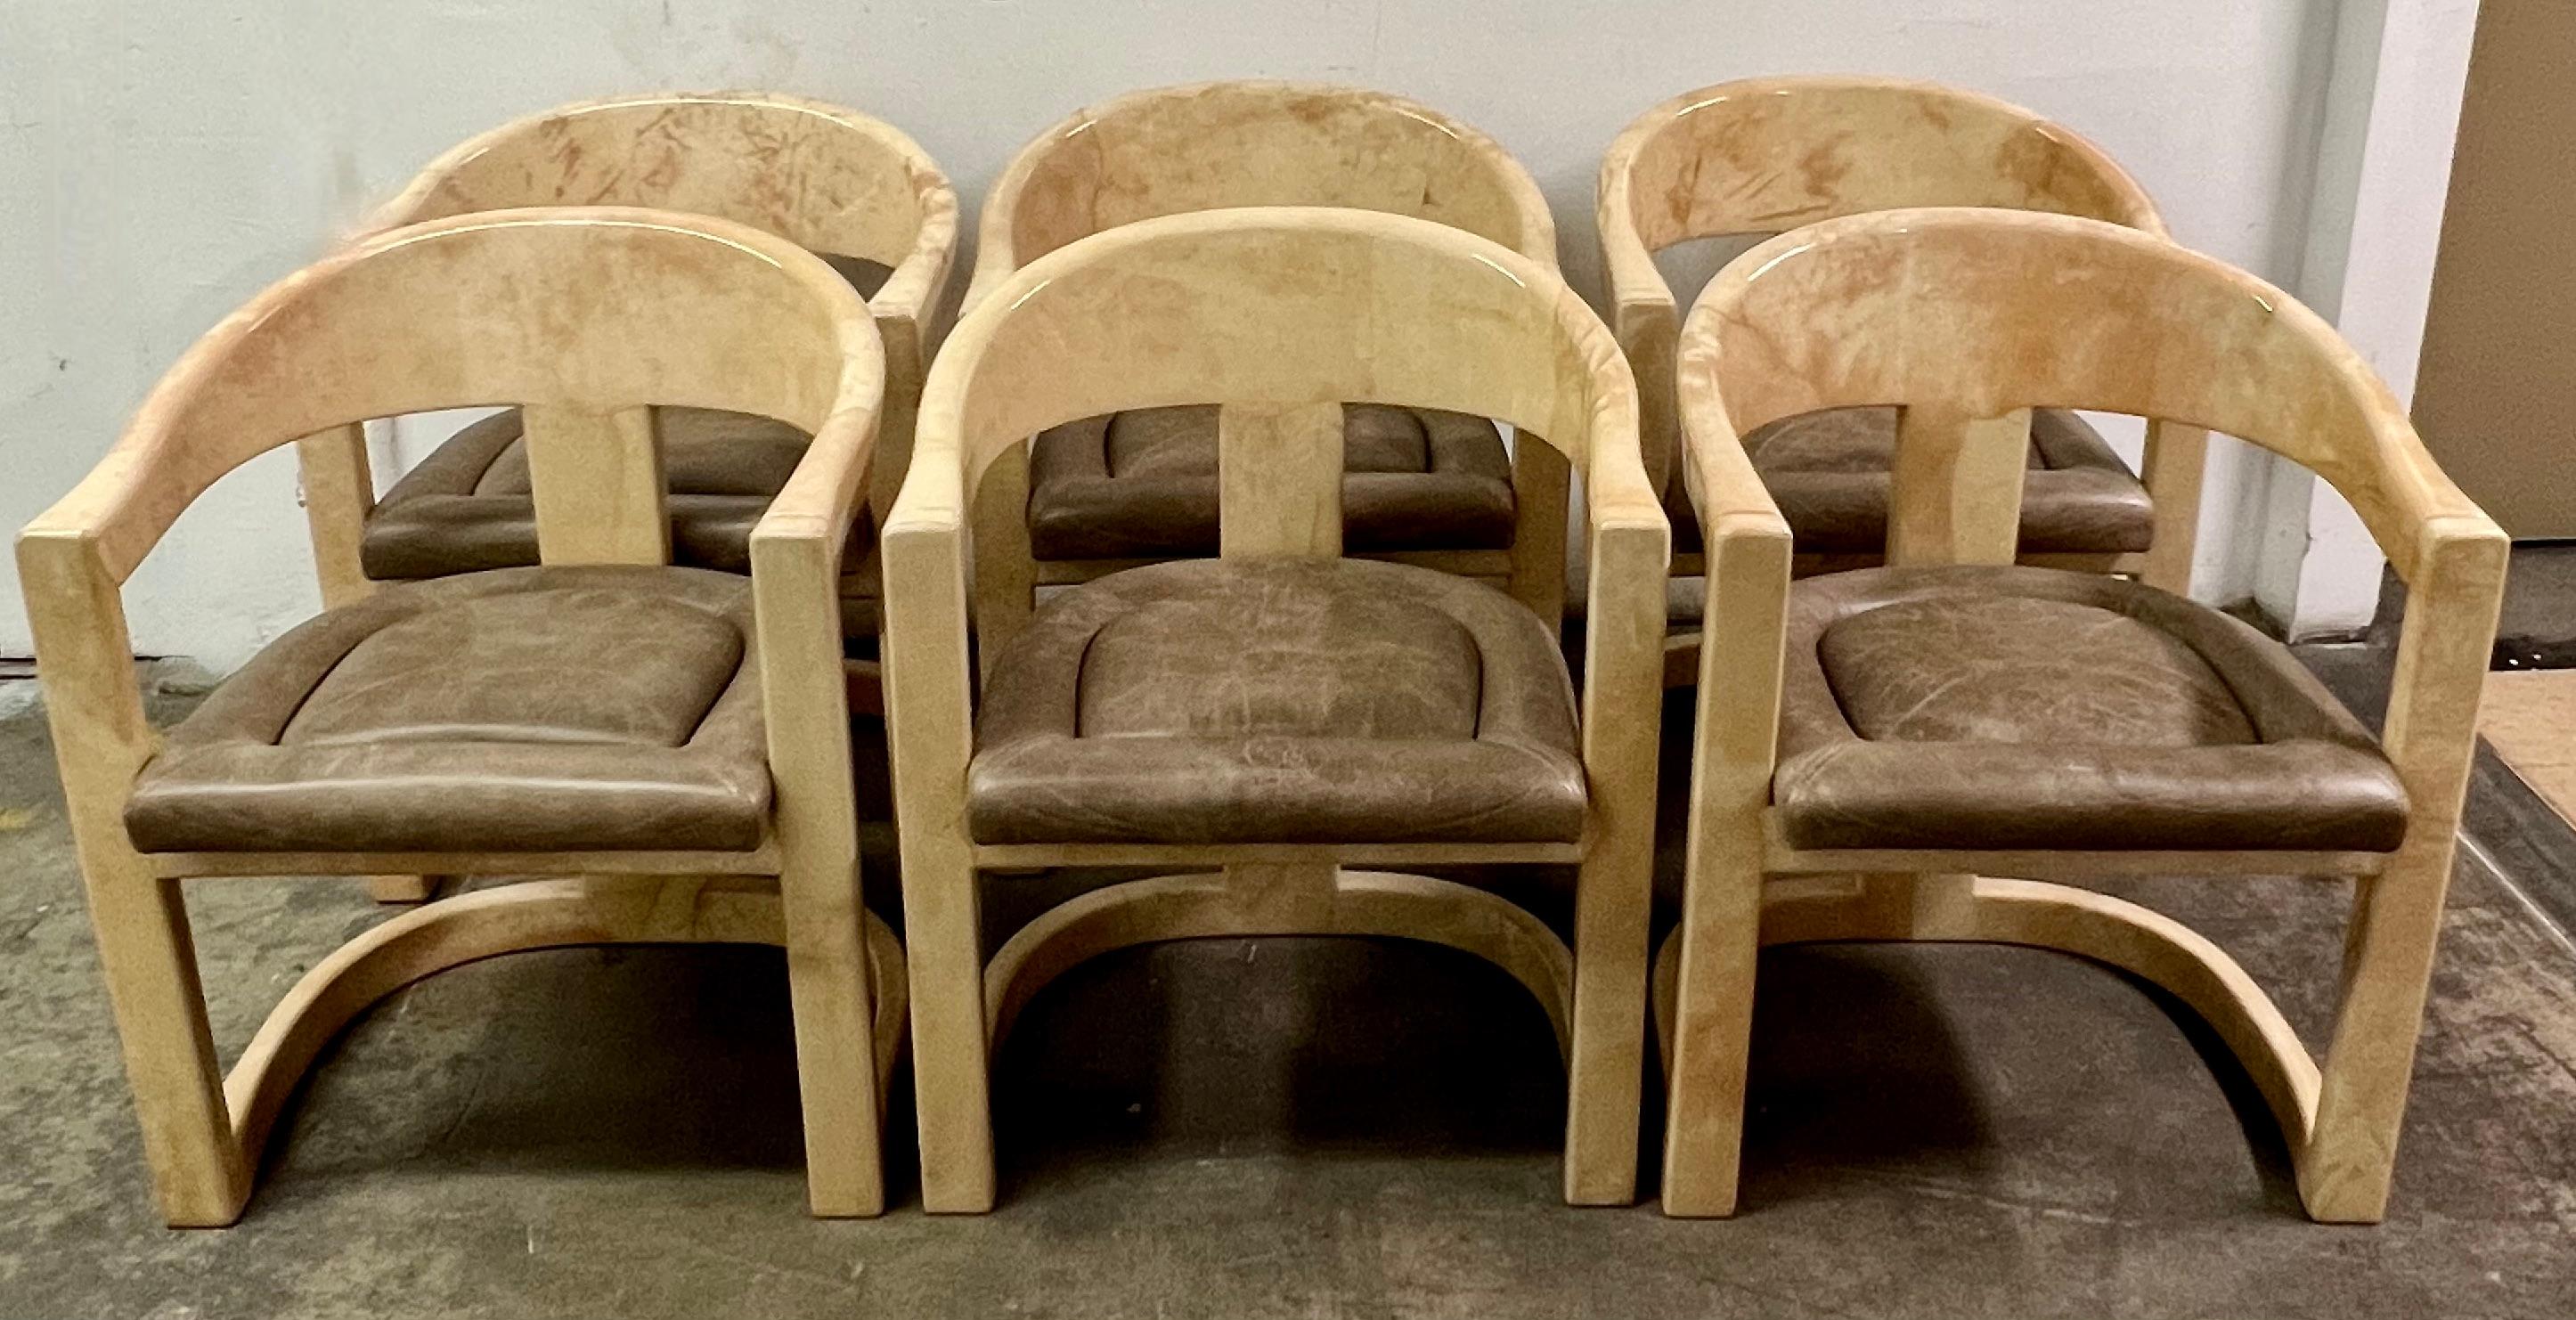 Satz von sechs Original Karl Springer Onassis Stühlen in Ziegenleder. Die sechs Stühle waren in einem Ein-Benutzer-Haushalt und sind in tollem Vintage-Zustand. 

Der Onassis-Stuhl ist einer der wichtigsten Entwürfe von Springer, mit einem Design,